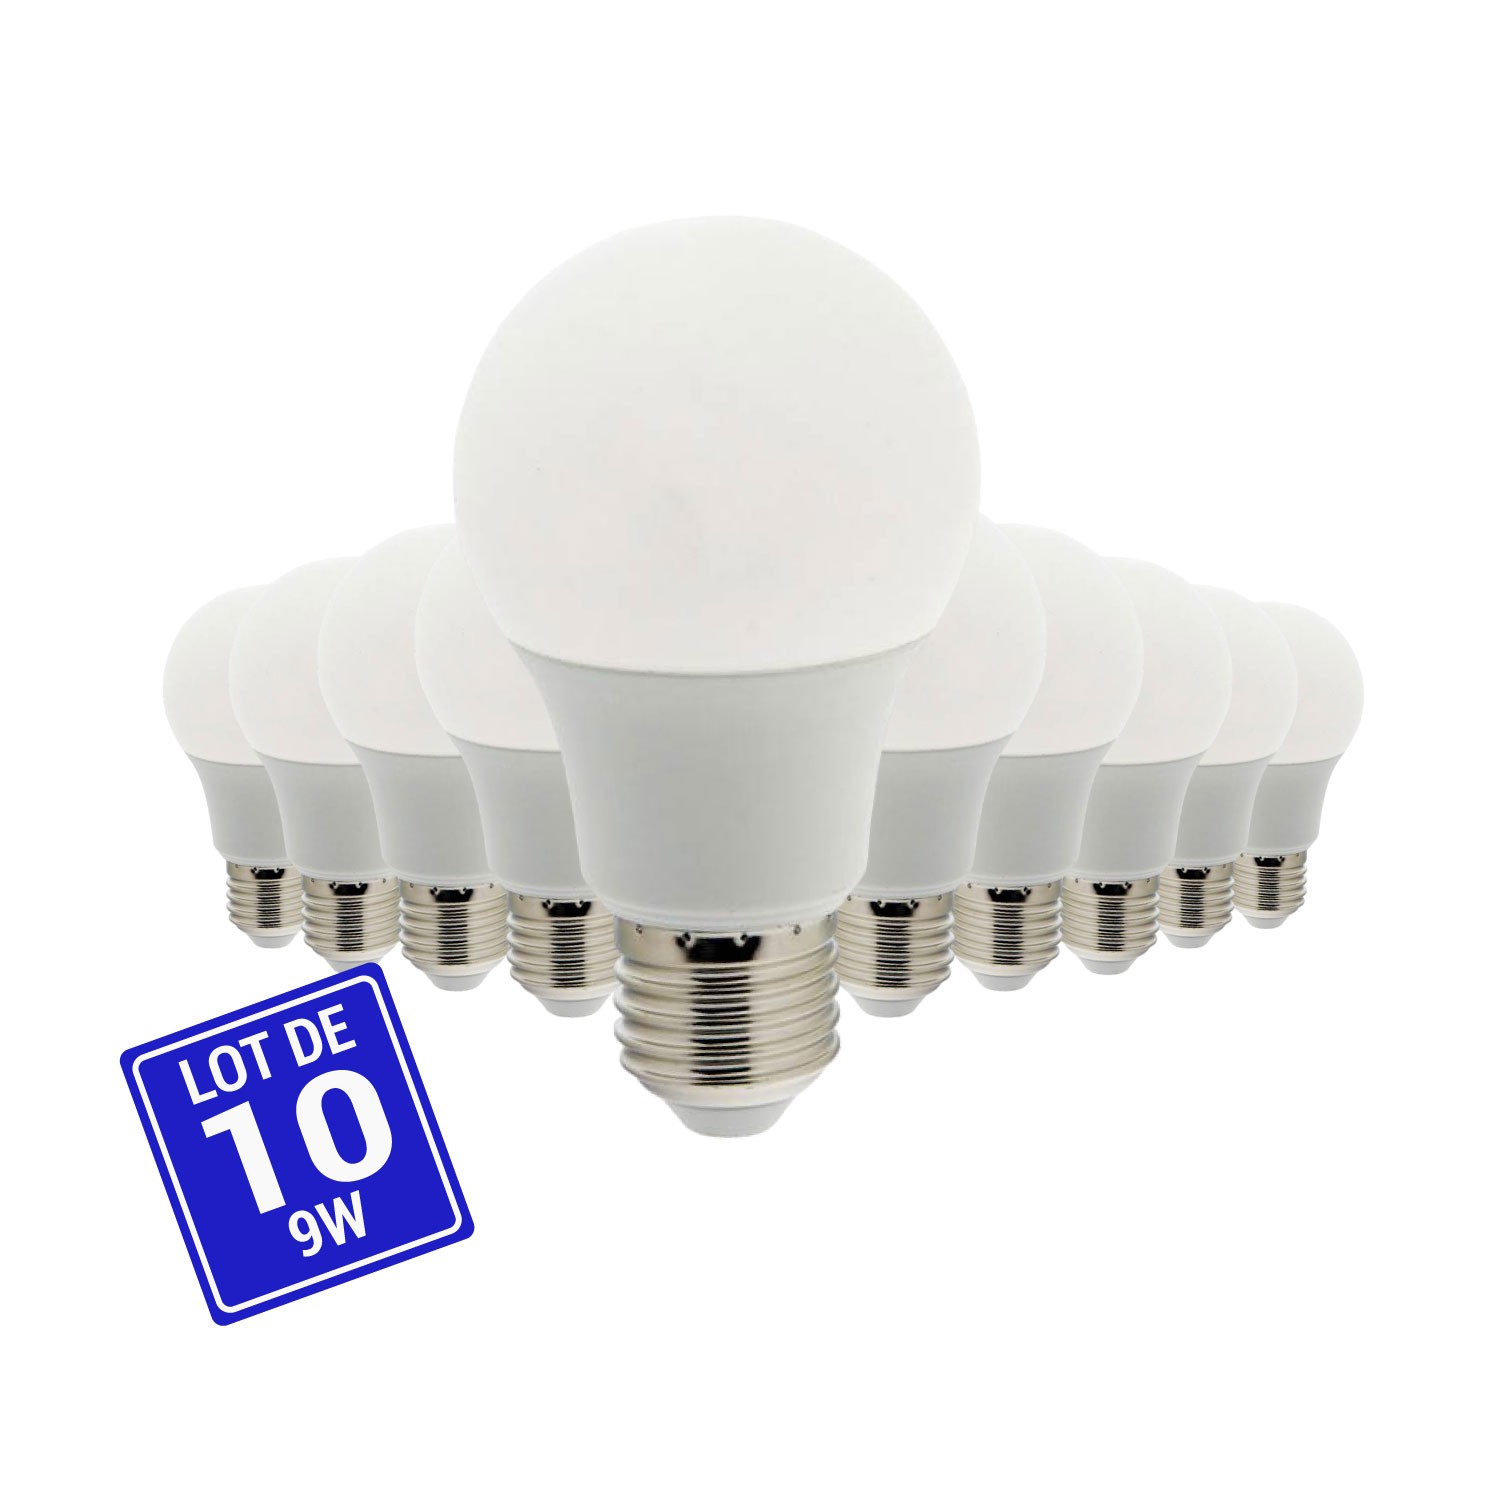 Ampoule LED E27 A60 - 9W